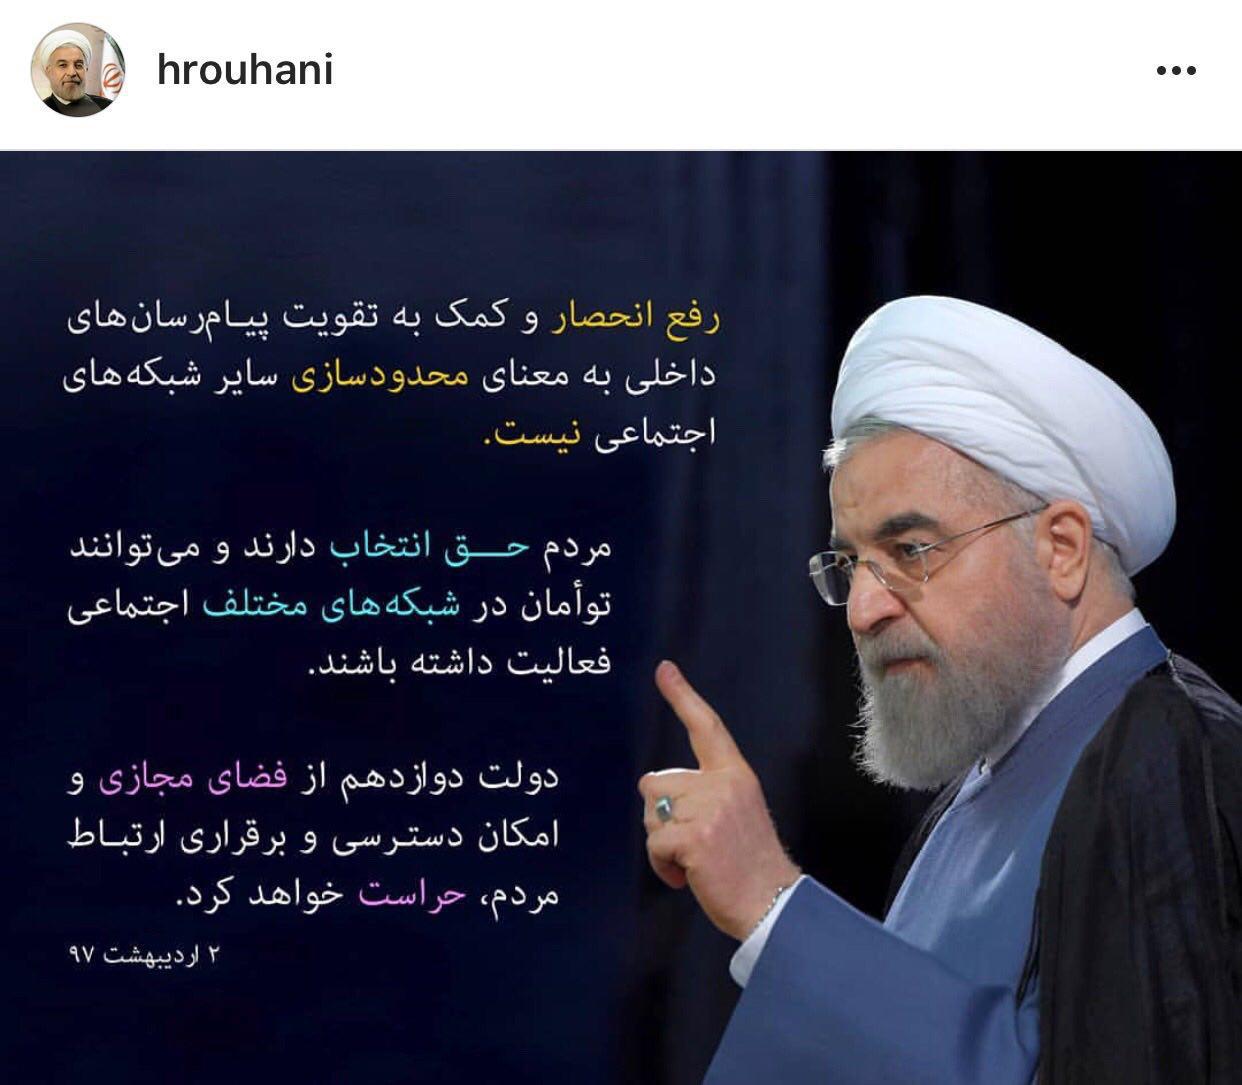 روحانی: تقویت پیام‌رسان‌های داخلی به معنای محدودسازی سایر شبکه‌های اجتماعی نیست / مردم حق انتخاب دارند / دولت از فضای مجازی و امکان دسترسی و برقراری ارتباط مردم حراست می‌کند